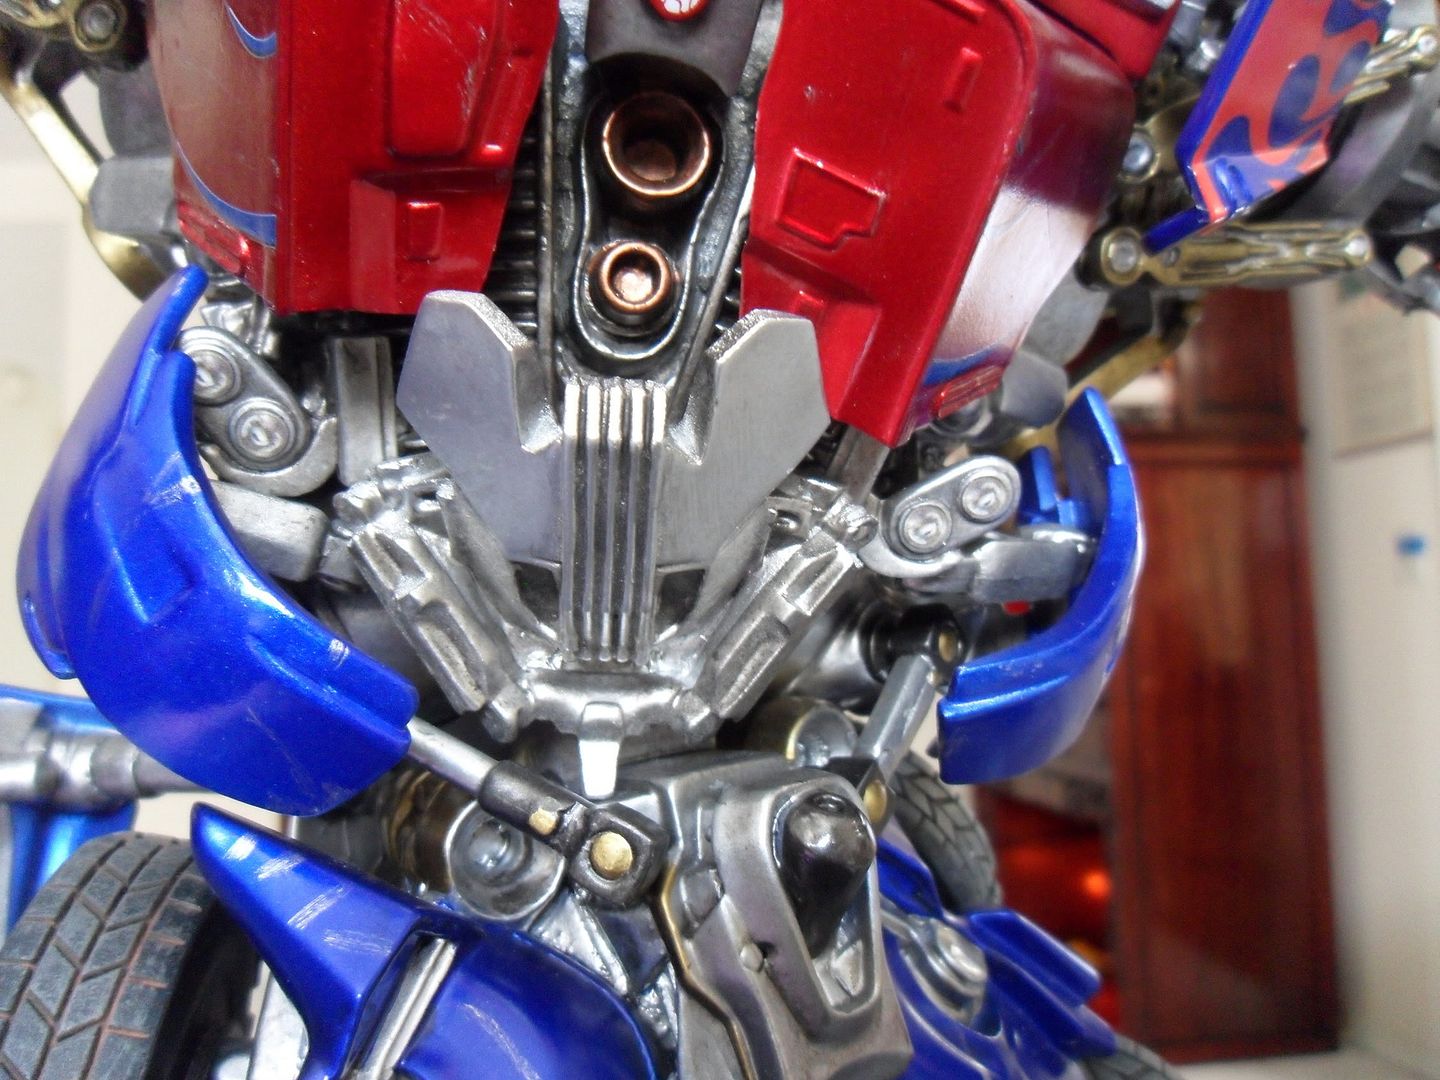 [Sideshow] Transformers - Optimus Prime Maquette - FOTOS OFICIAIS!!! Pág. 02 - Página 5 SAM_1293